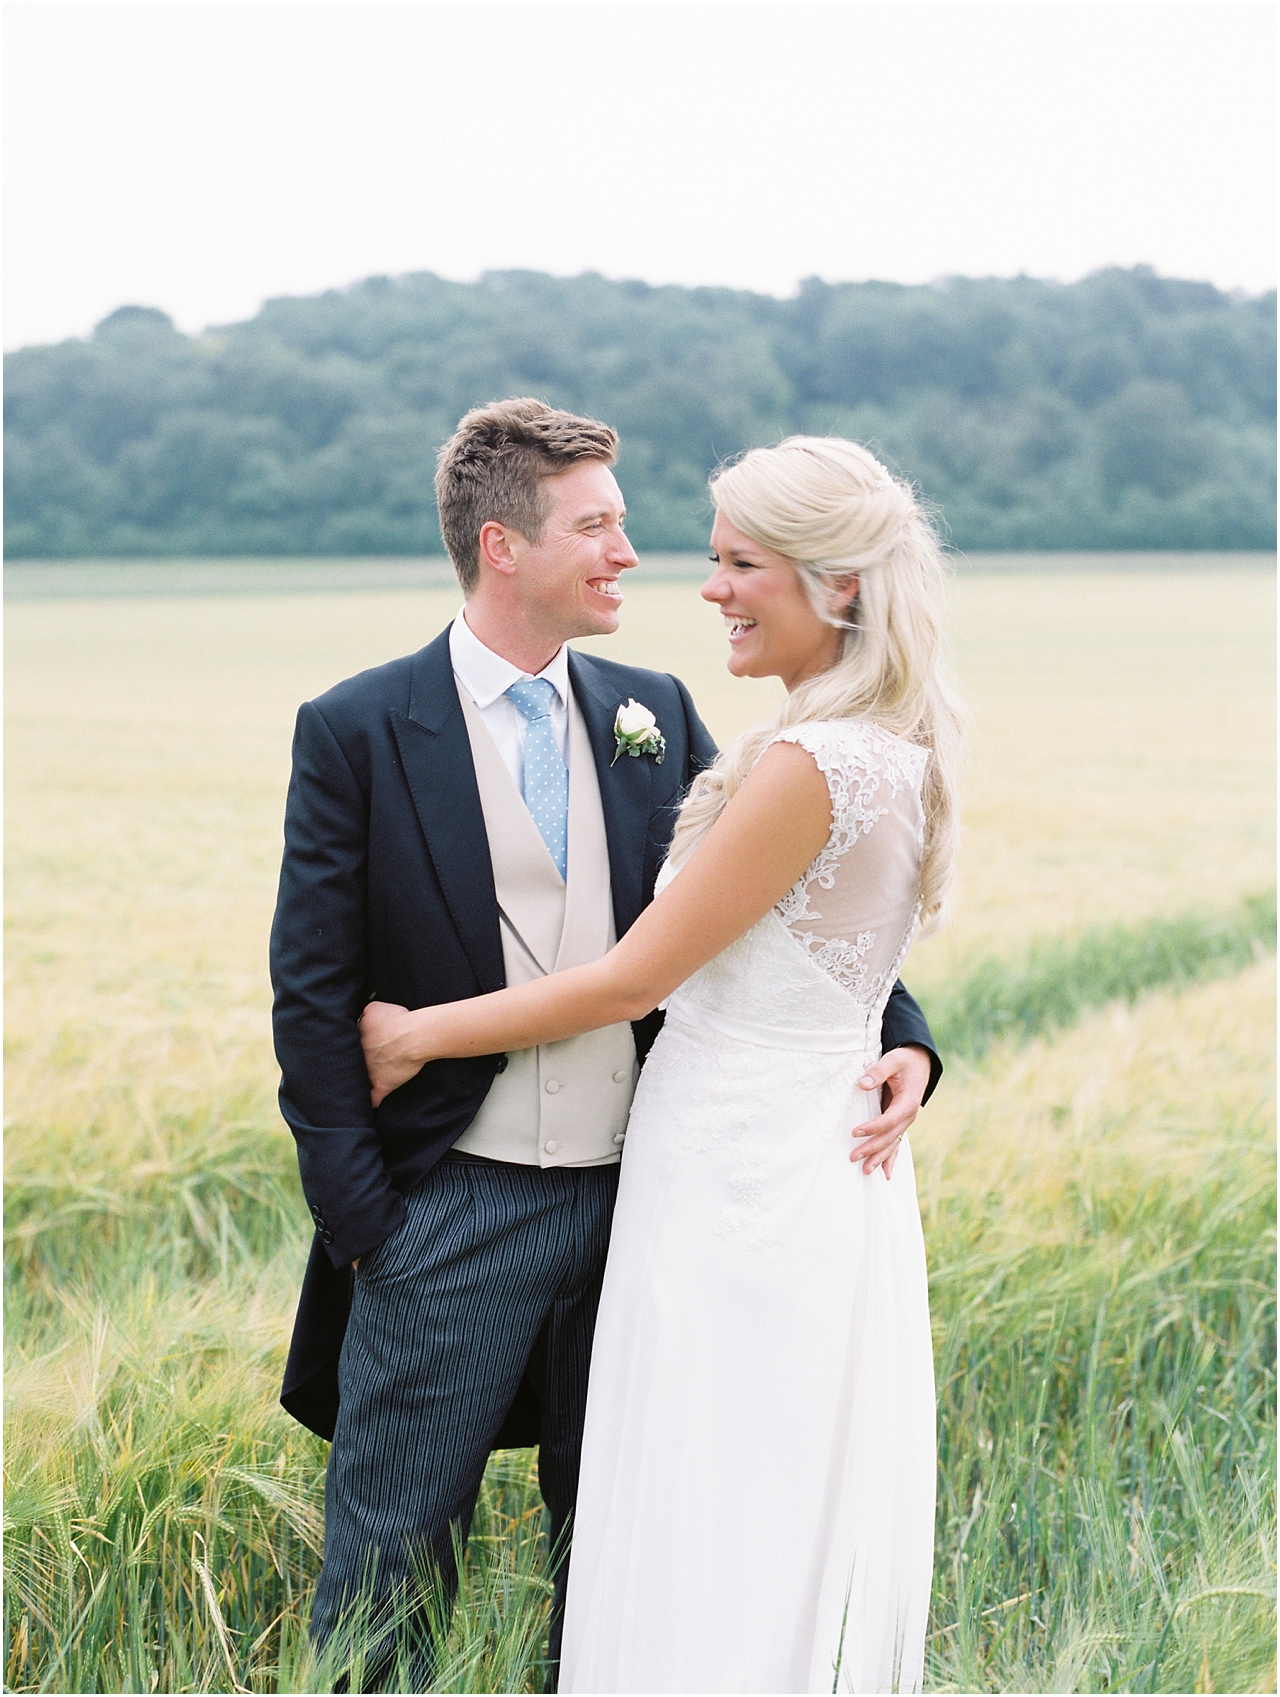 Romantic photos at Sussex Farm Wedding